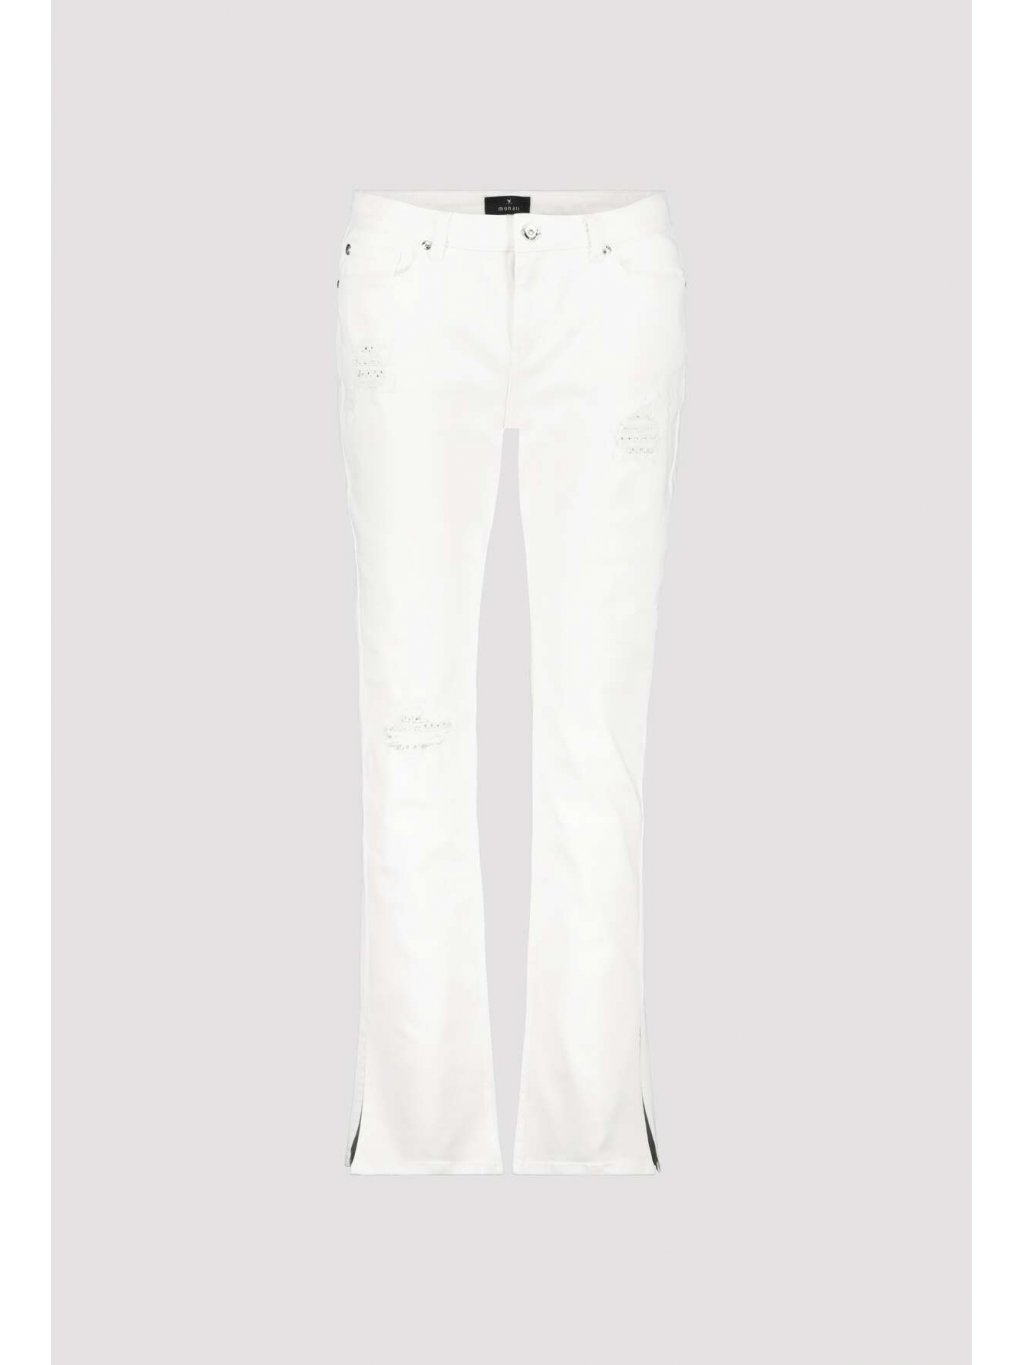 Kalhoty Monari 7566 jemné bílé s kamínky džíny